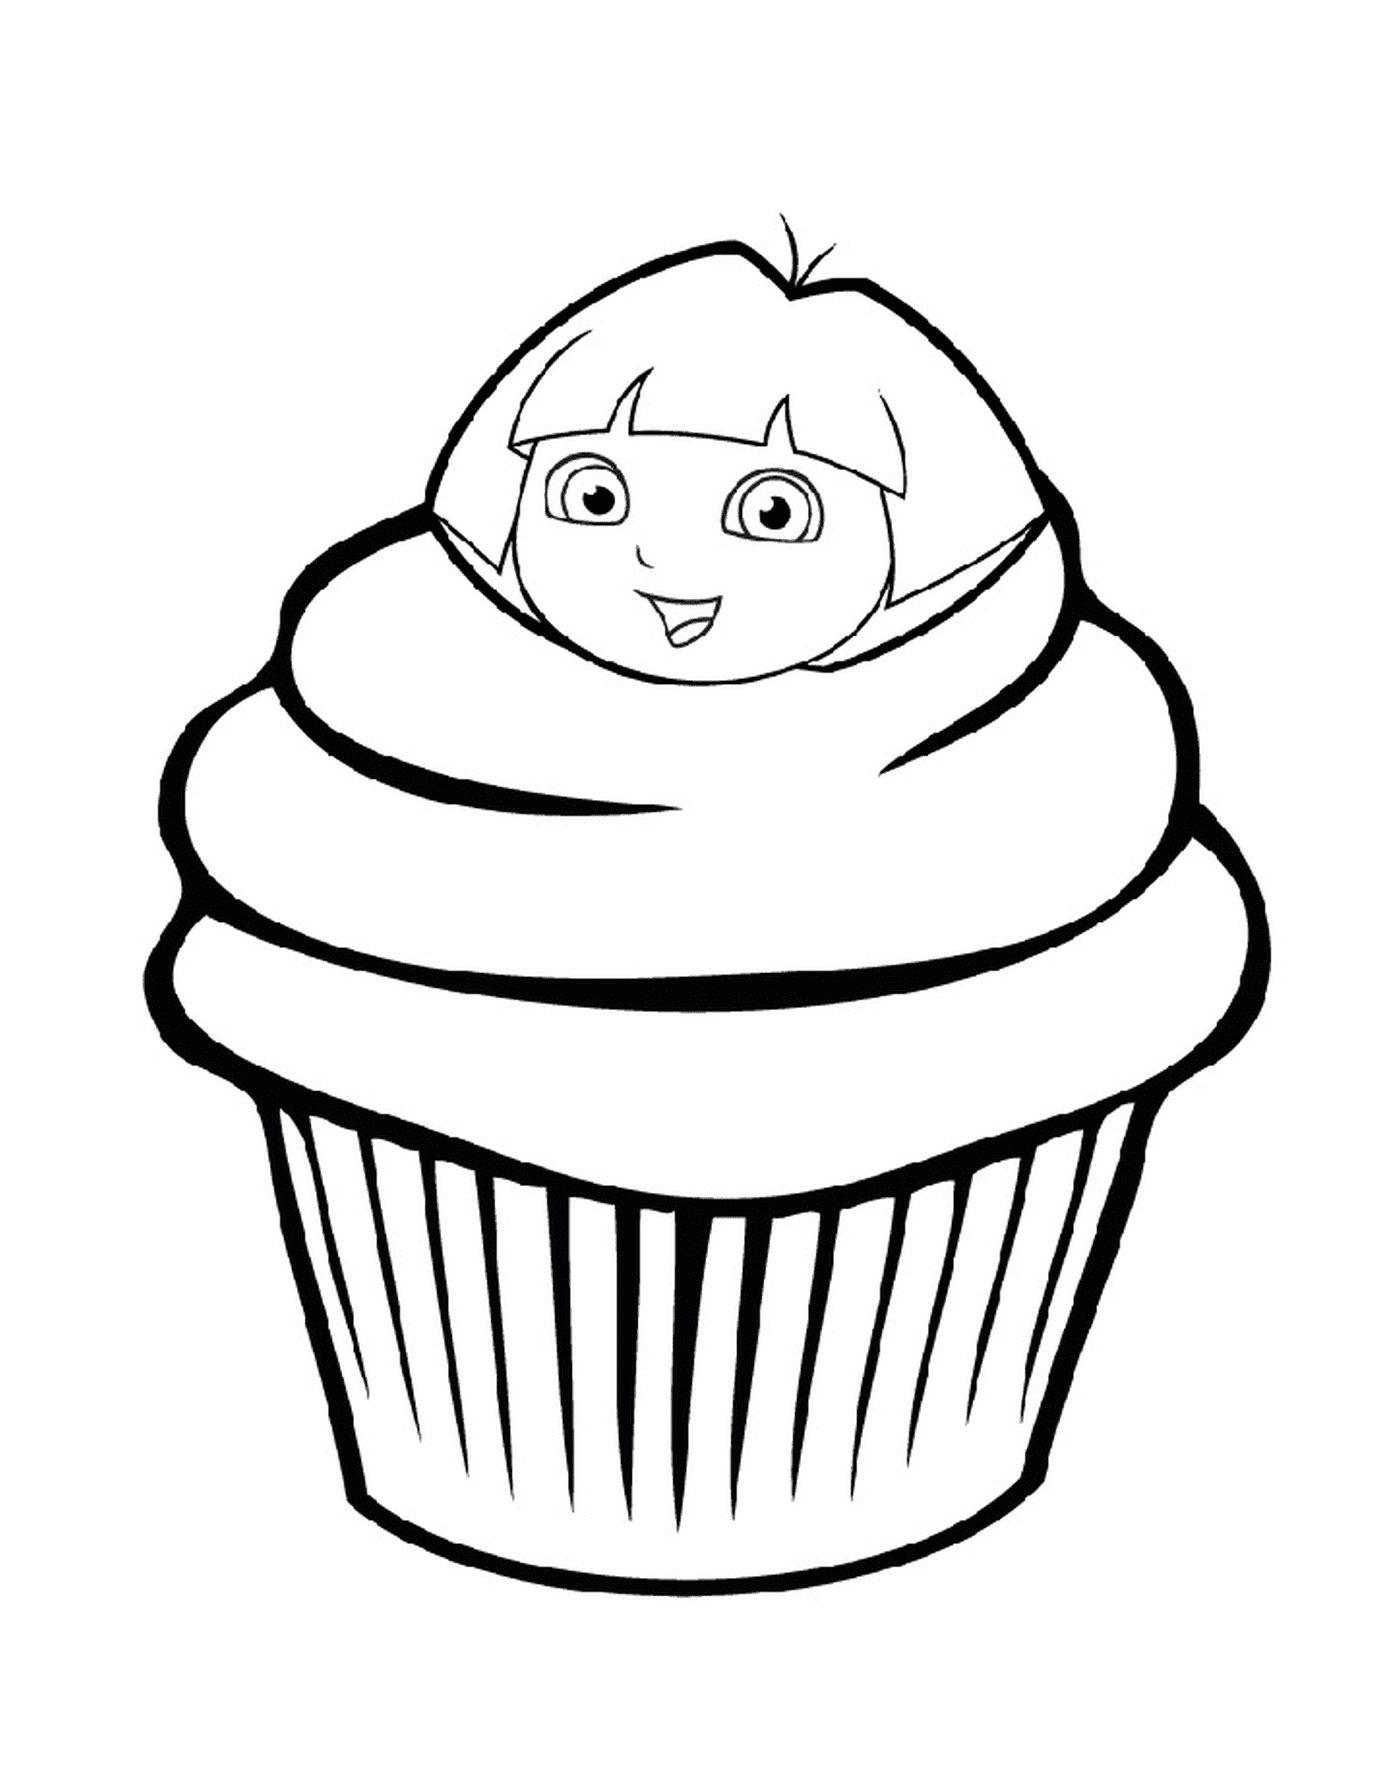  Um cupcake de Dora, o explorador 